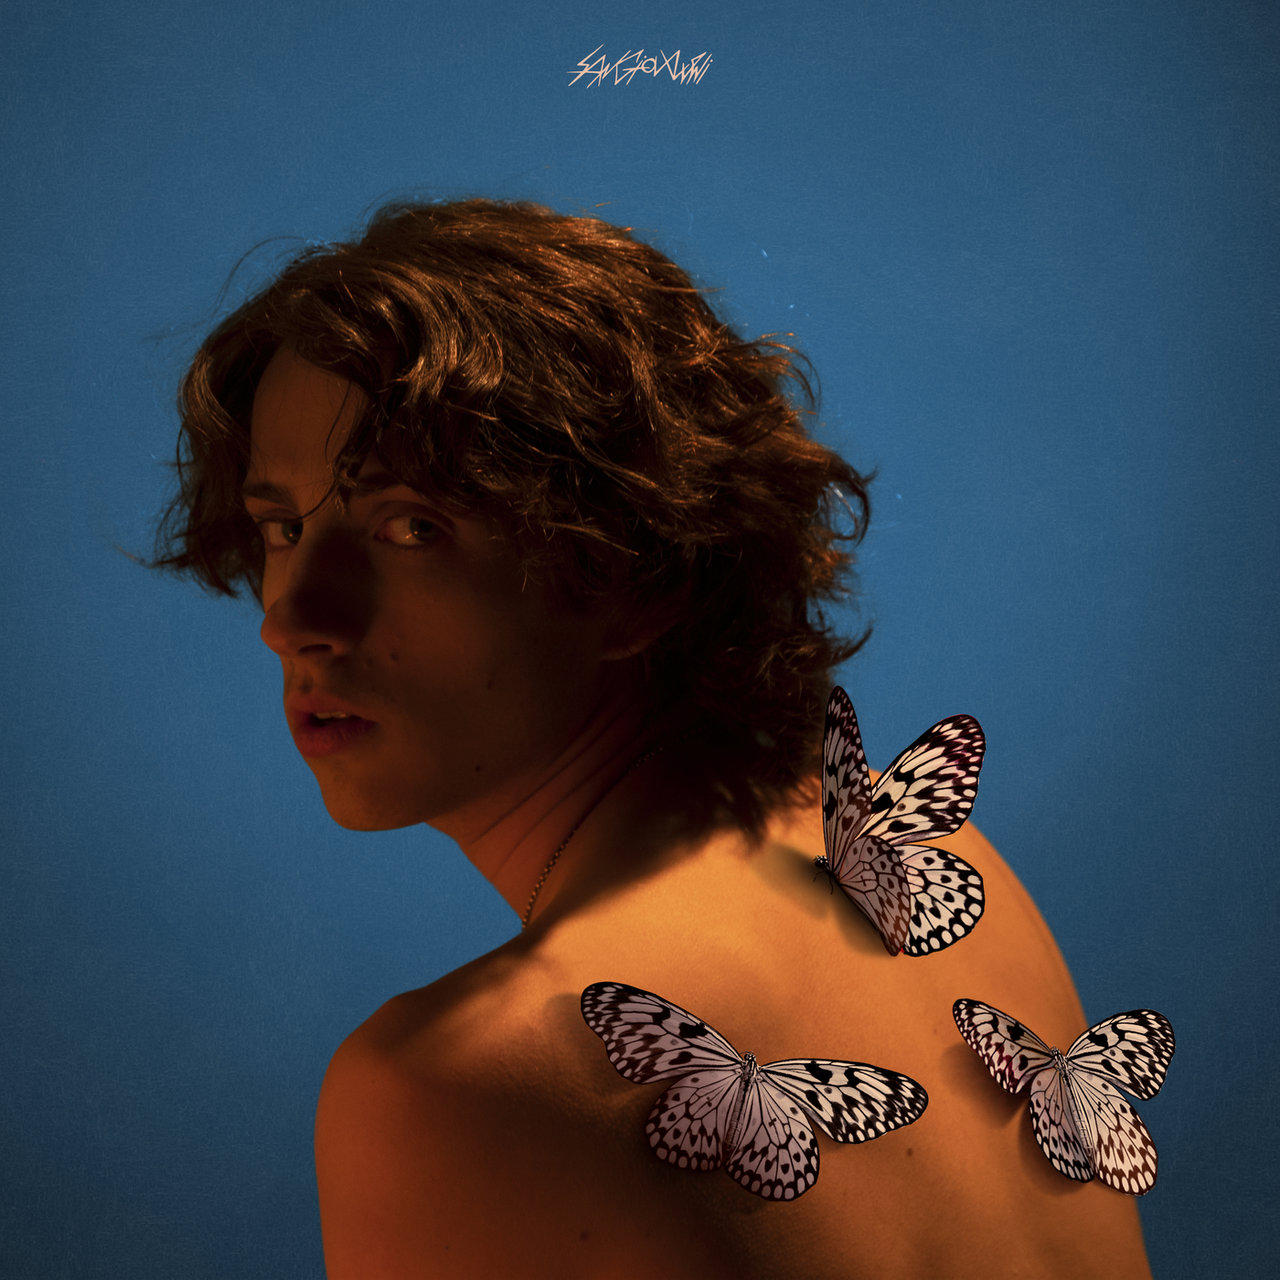 sangiovanni — farfalle cover artwork